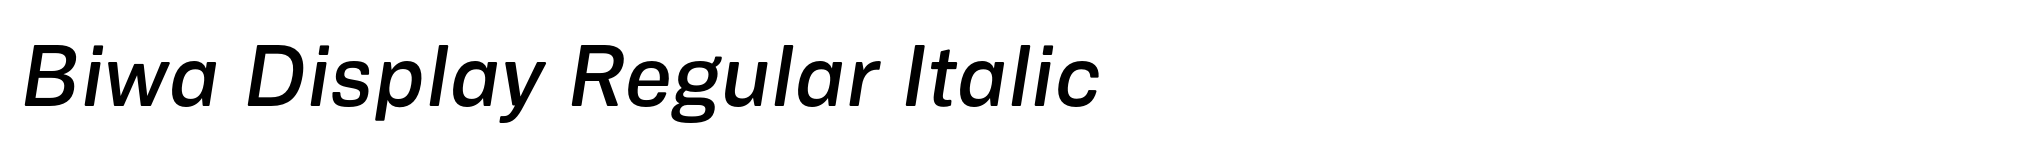 Biwa Display Regular Italic image